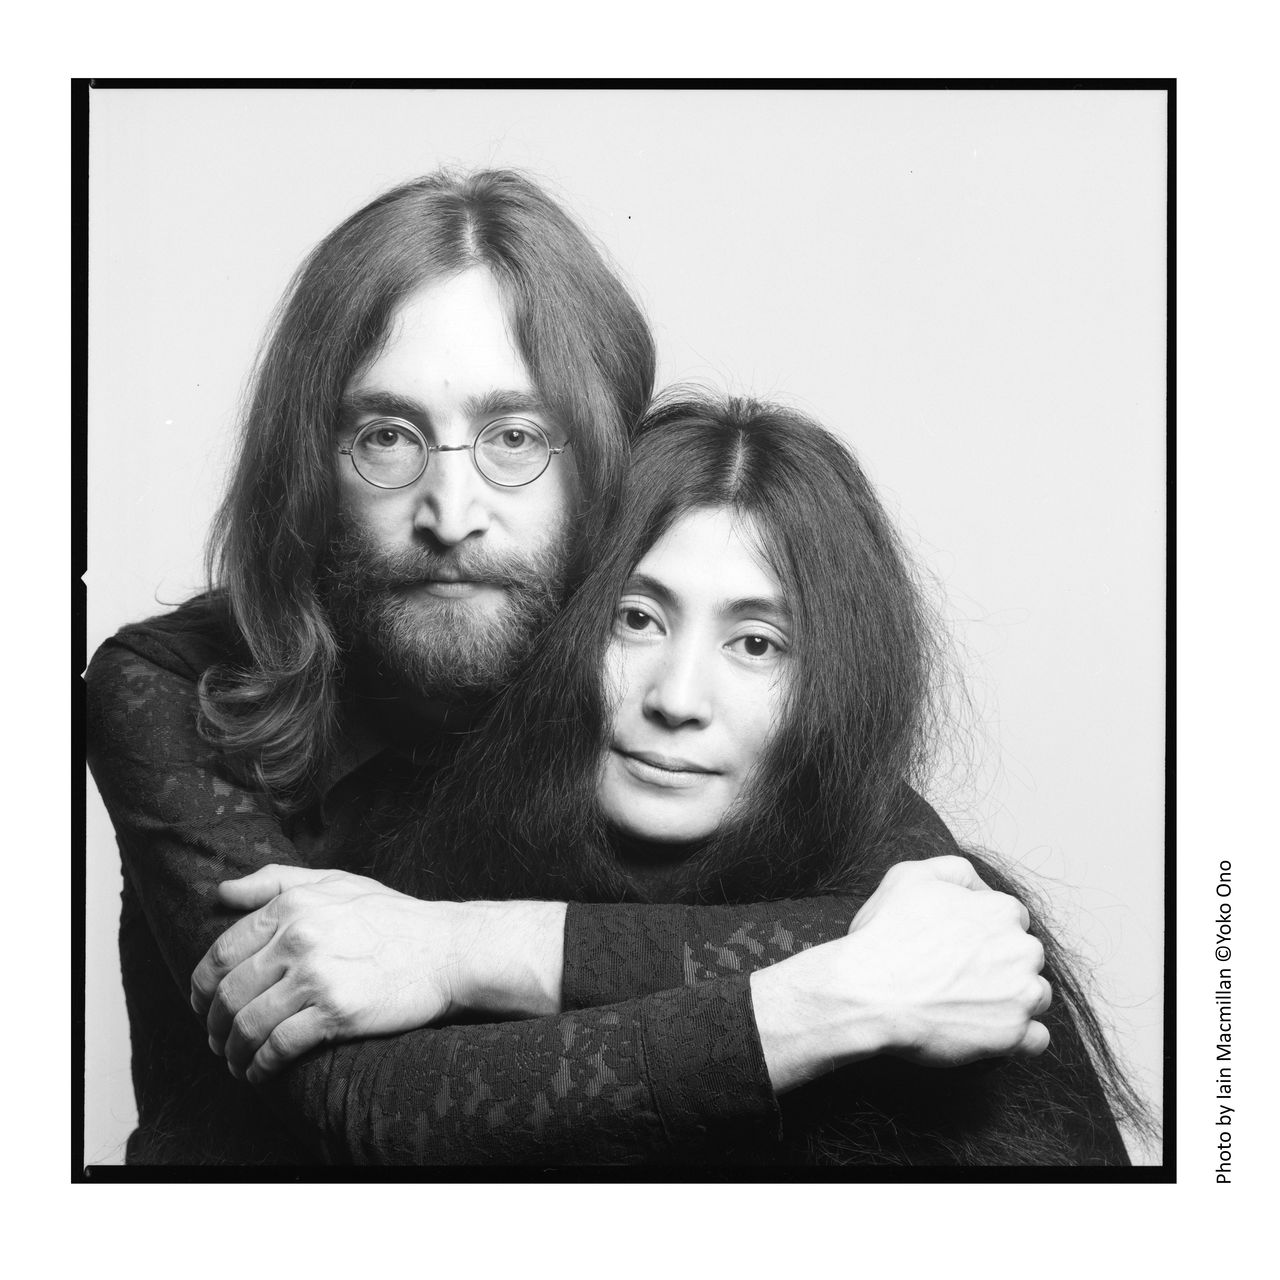 索尼音乐六本木博物馆举办的“DOUBLE FANTASY-John ＆Yoko东京展”曾在英国利物浦吸引了70万人次参观。东京展的特设展区“Japan Exclusive”陈列的特别藏品向观众展示了列侬与日本的不解之缘